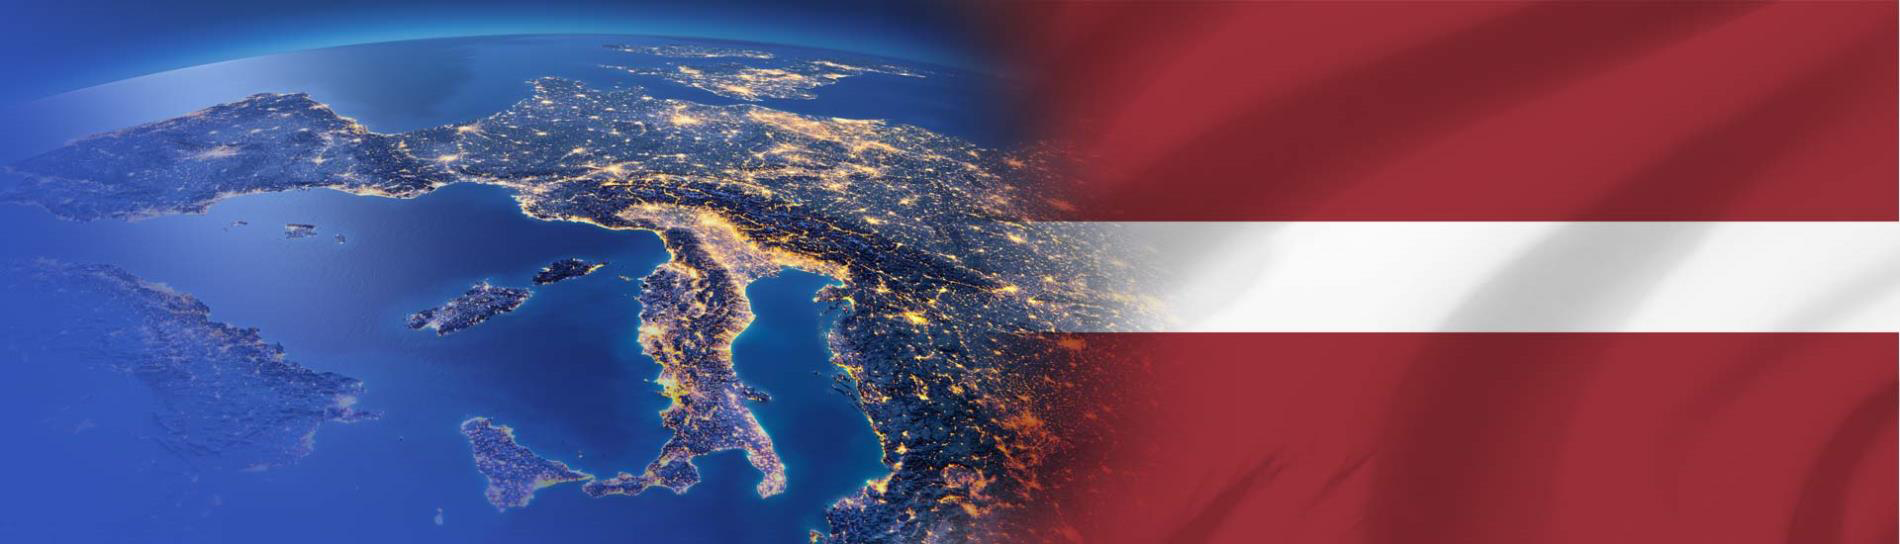 steagul Letoniei pe continentul european